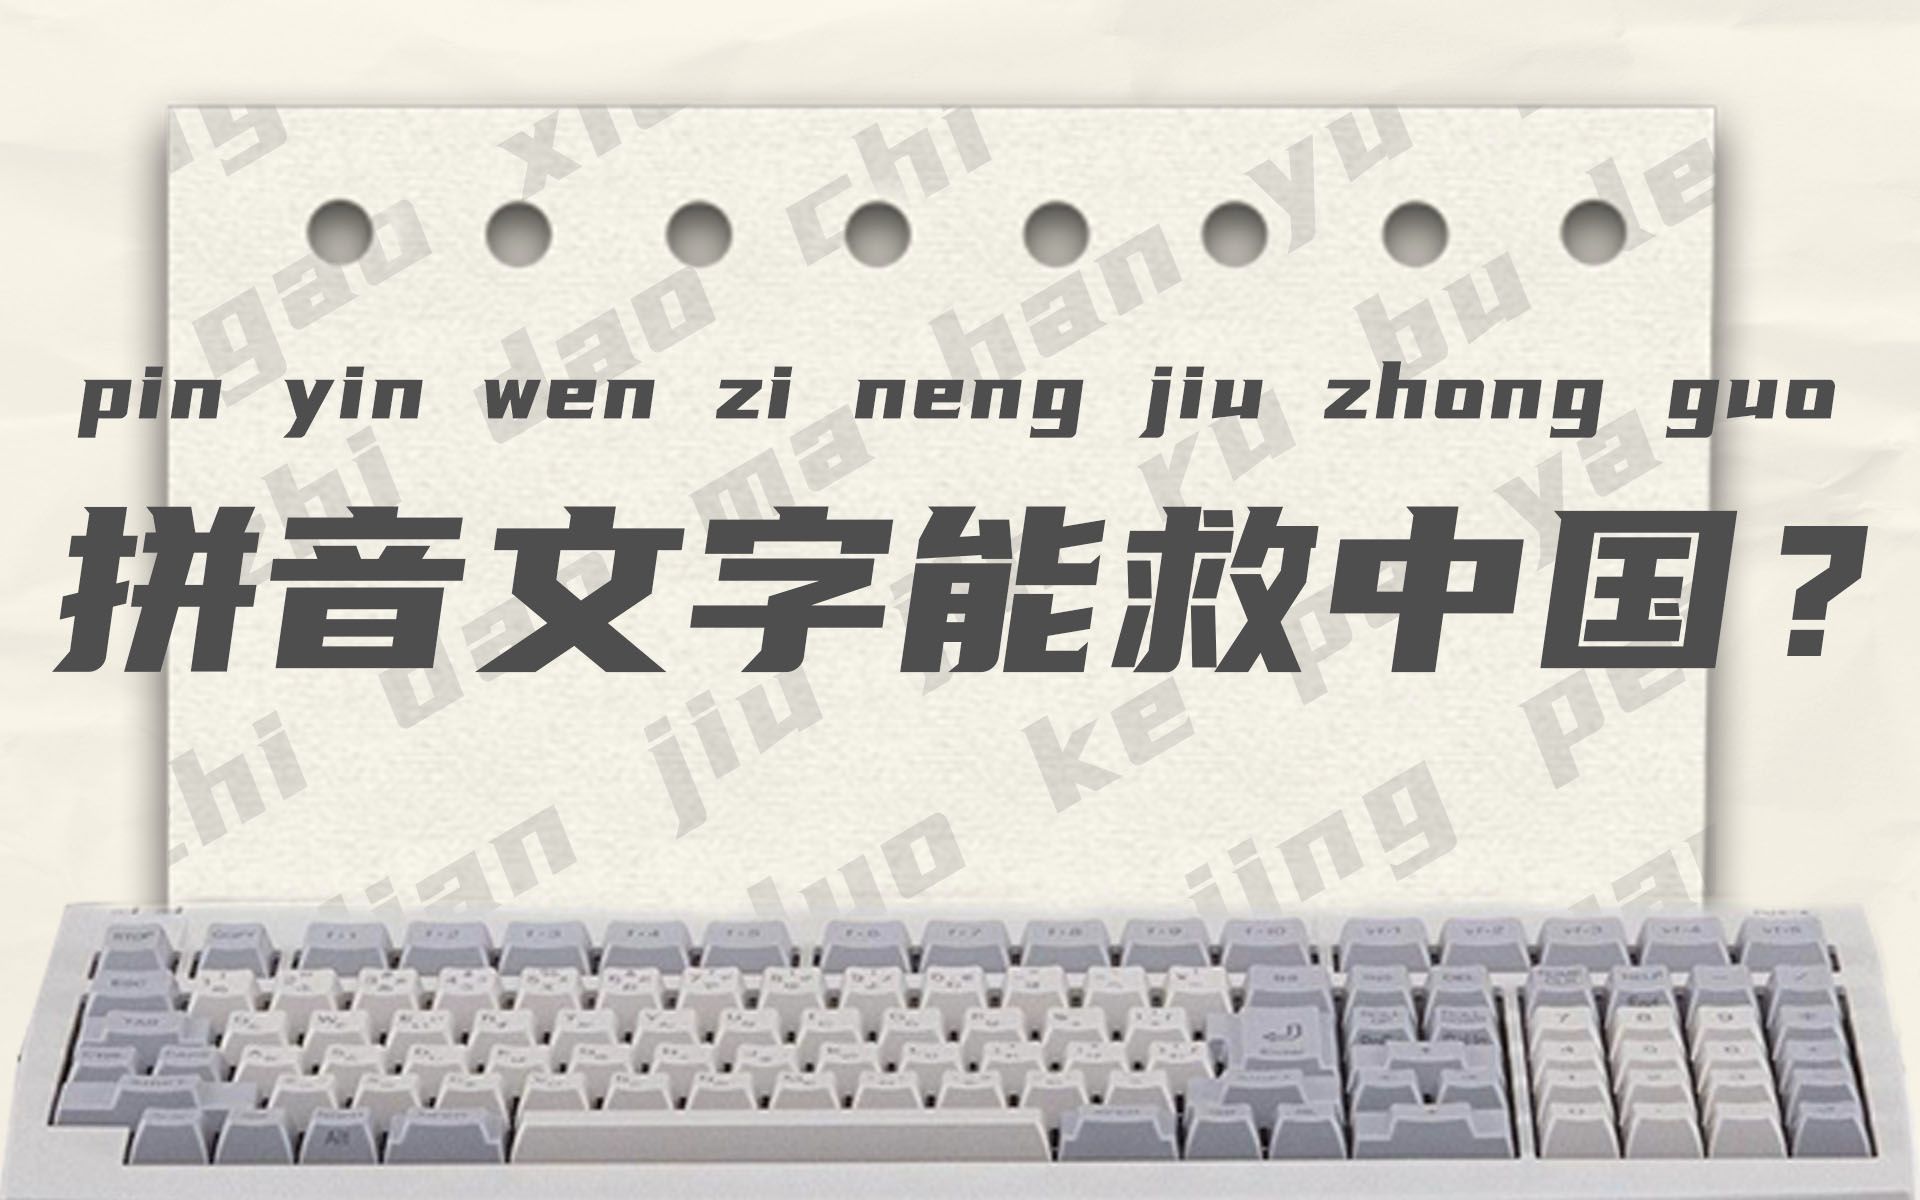 让汉字进入电脑有多难？全世界都失败了，这群中国人成功了